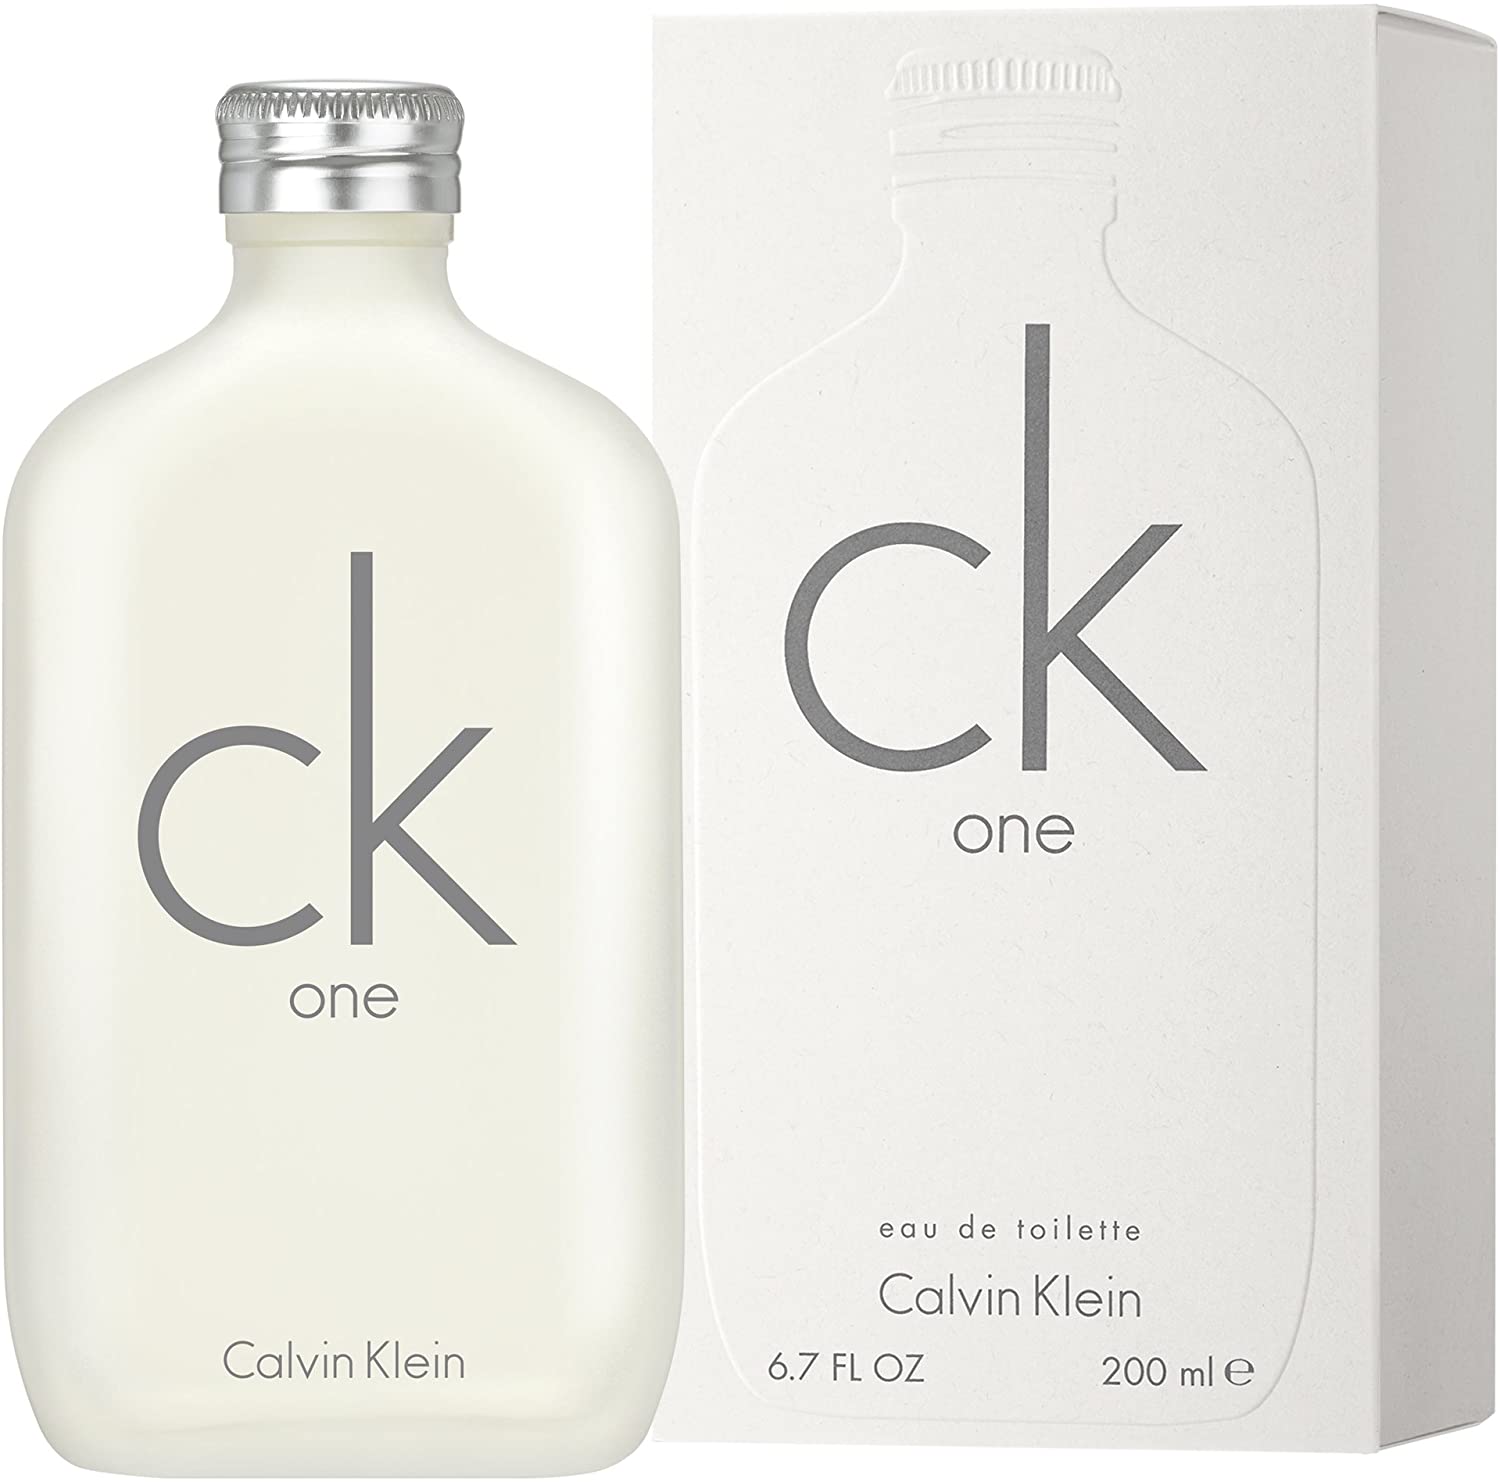 Calvin Klein One for Unisex, 200 ml, EDT Spray - clicks2get.ae